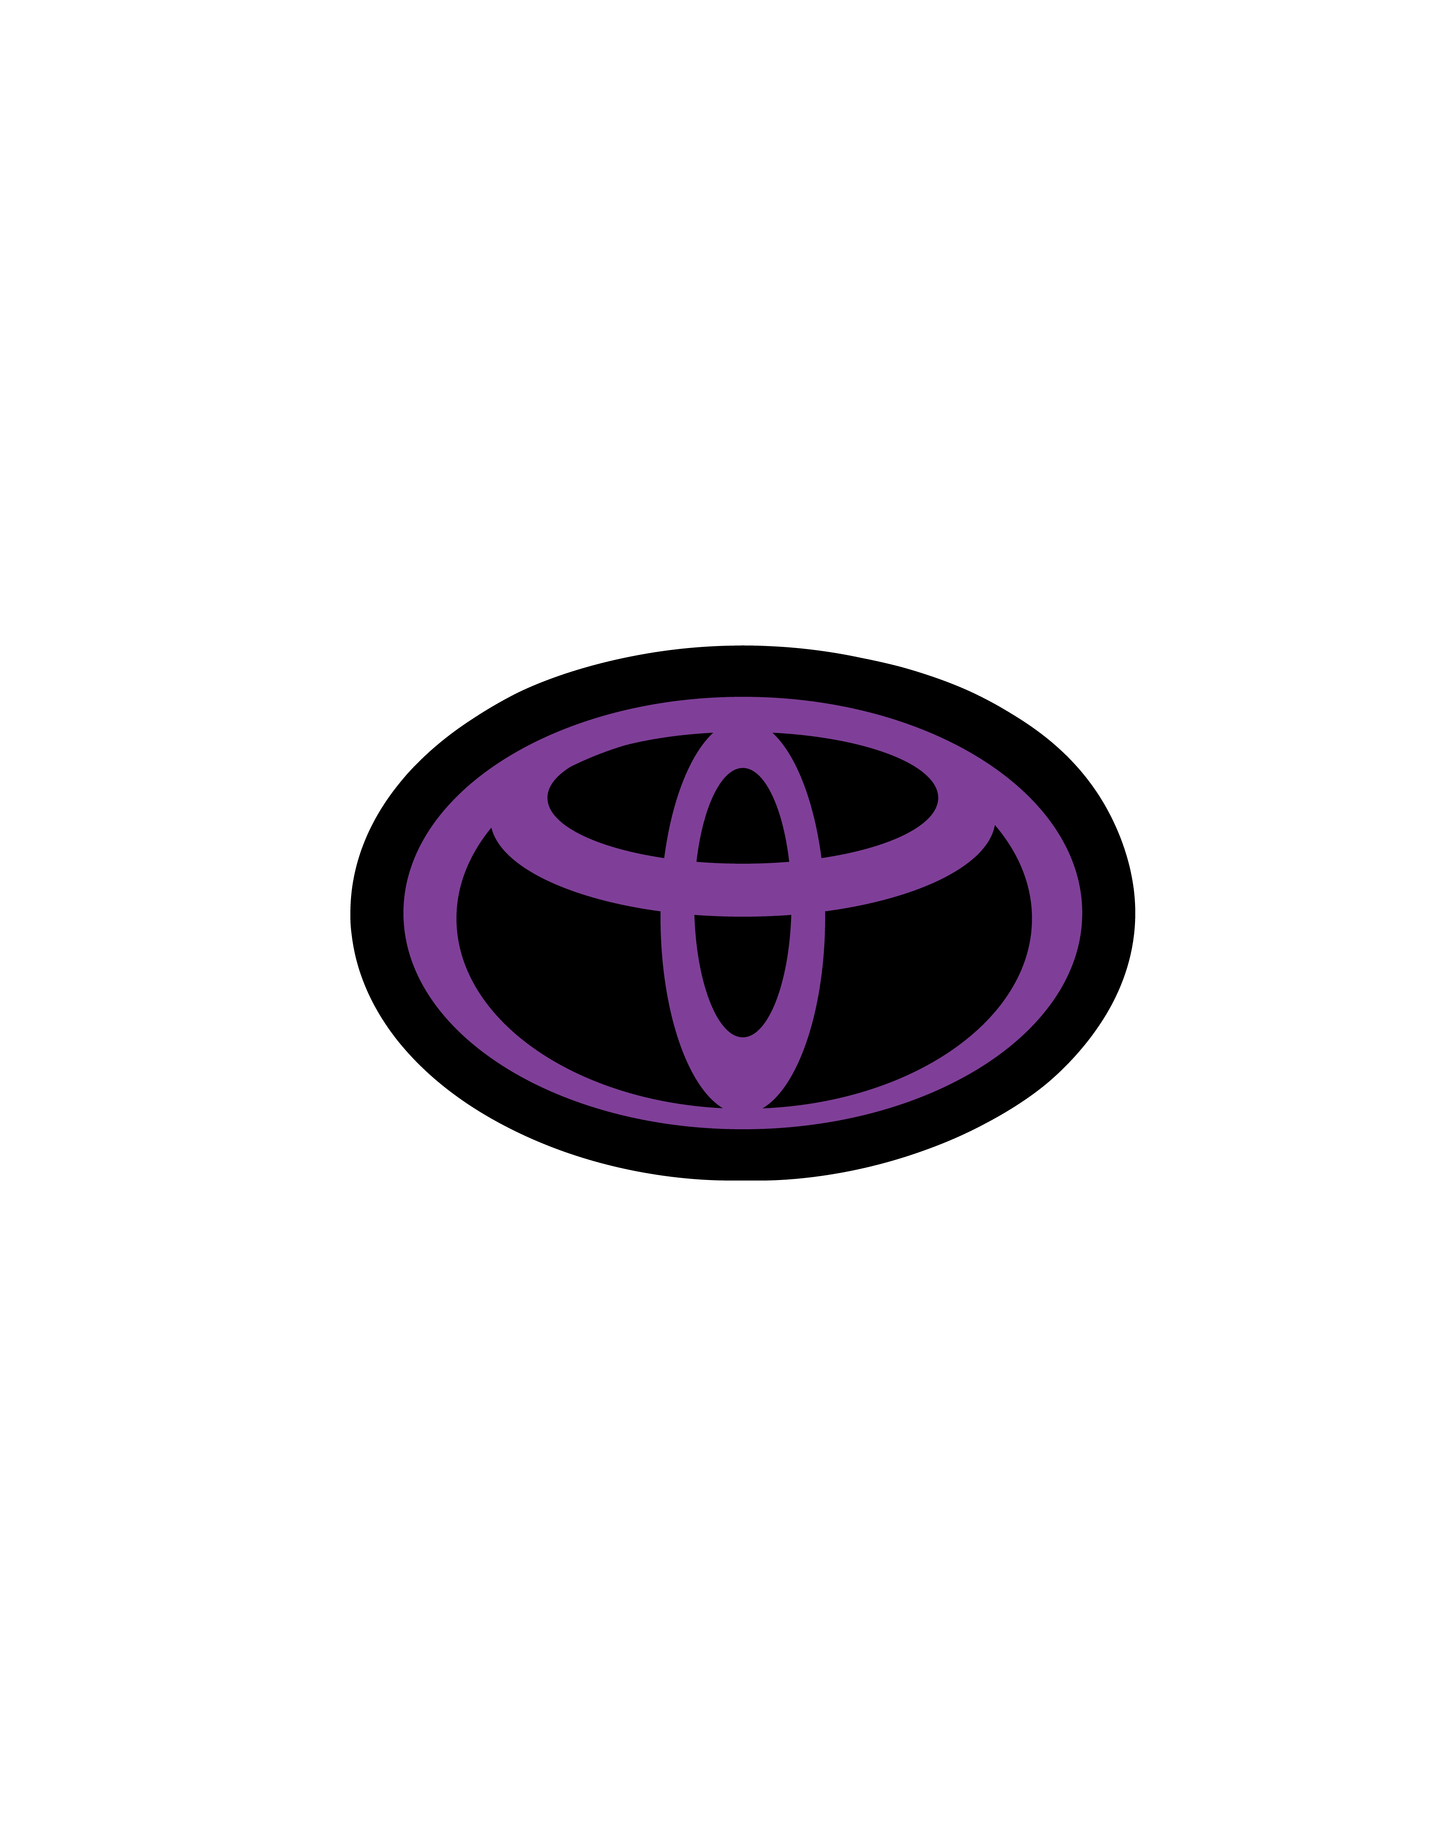 2017-2019 Toyota Corolla Sedan Emblem Front Vinyl Overlay